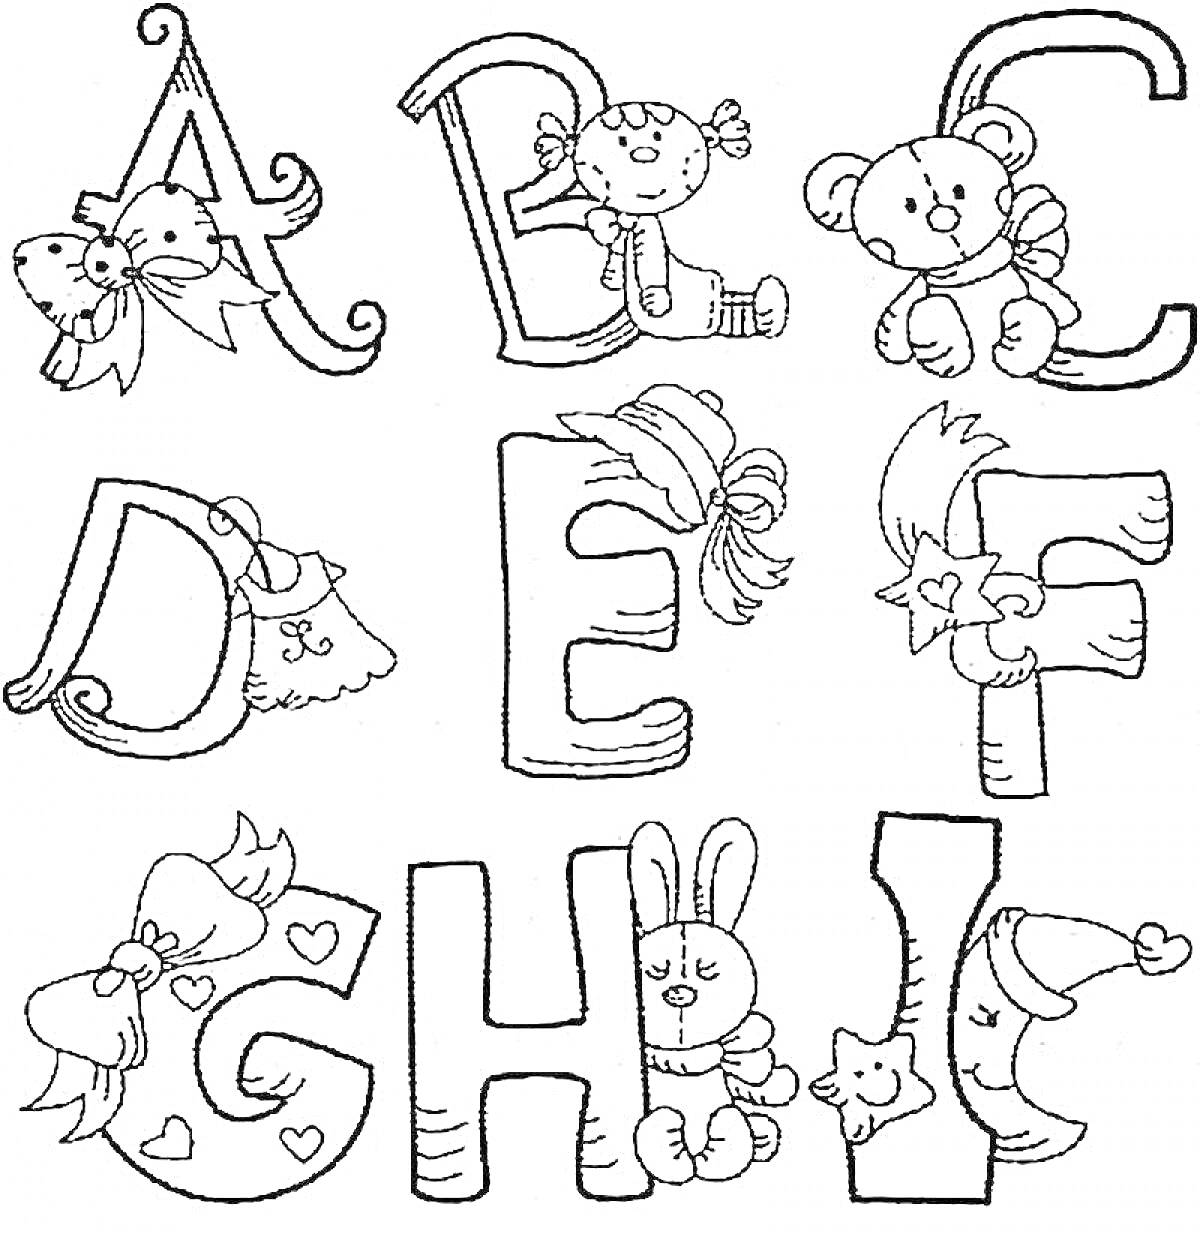 Раскраска раскраска с буквами и милыми антуражными элементами (котенок, клоун, медвежонок, колокольчик, листья, бантик, кролик, мышка)